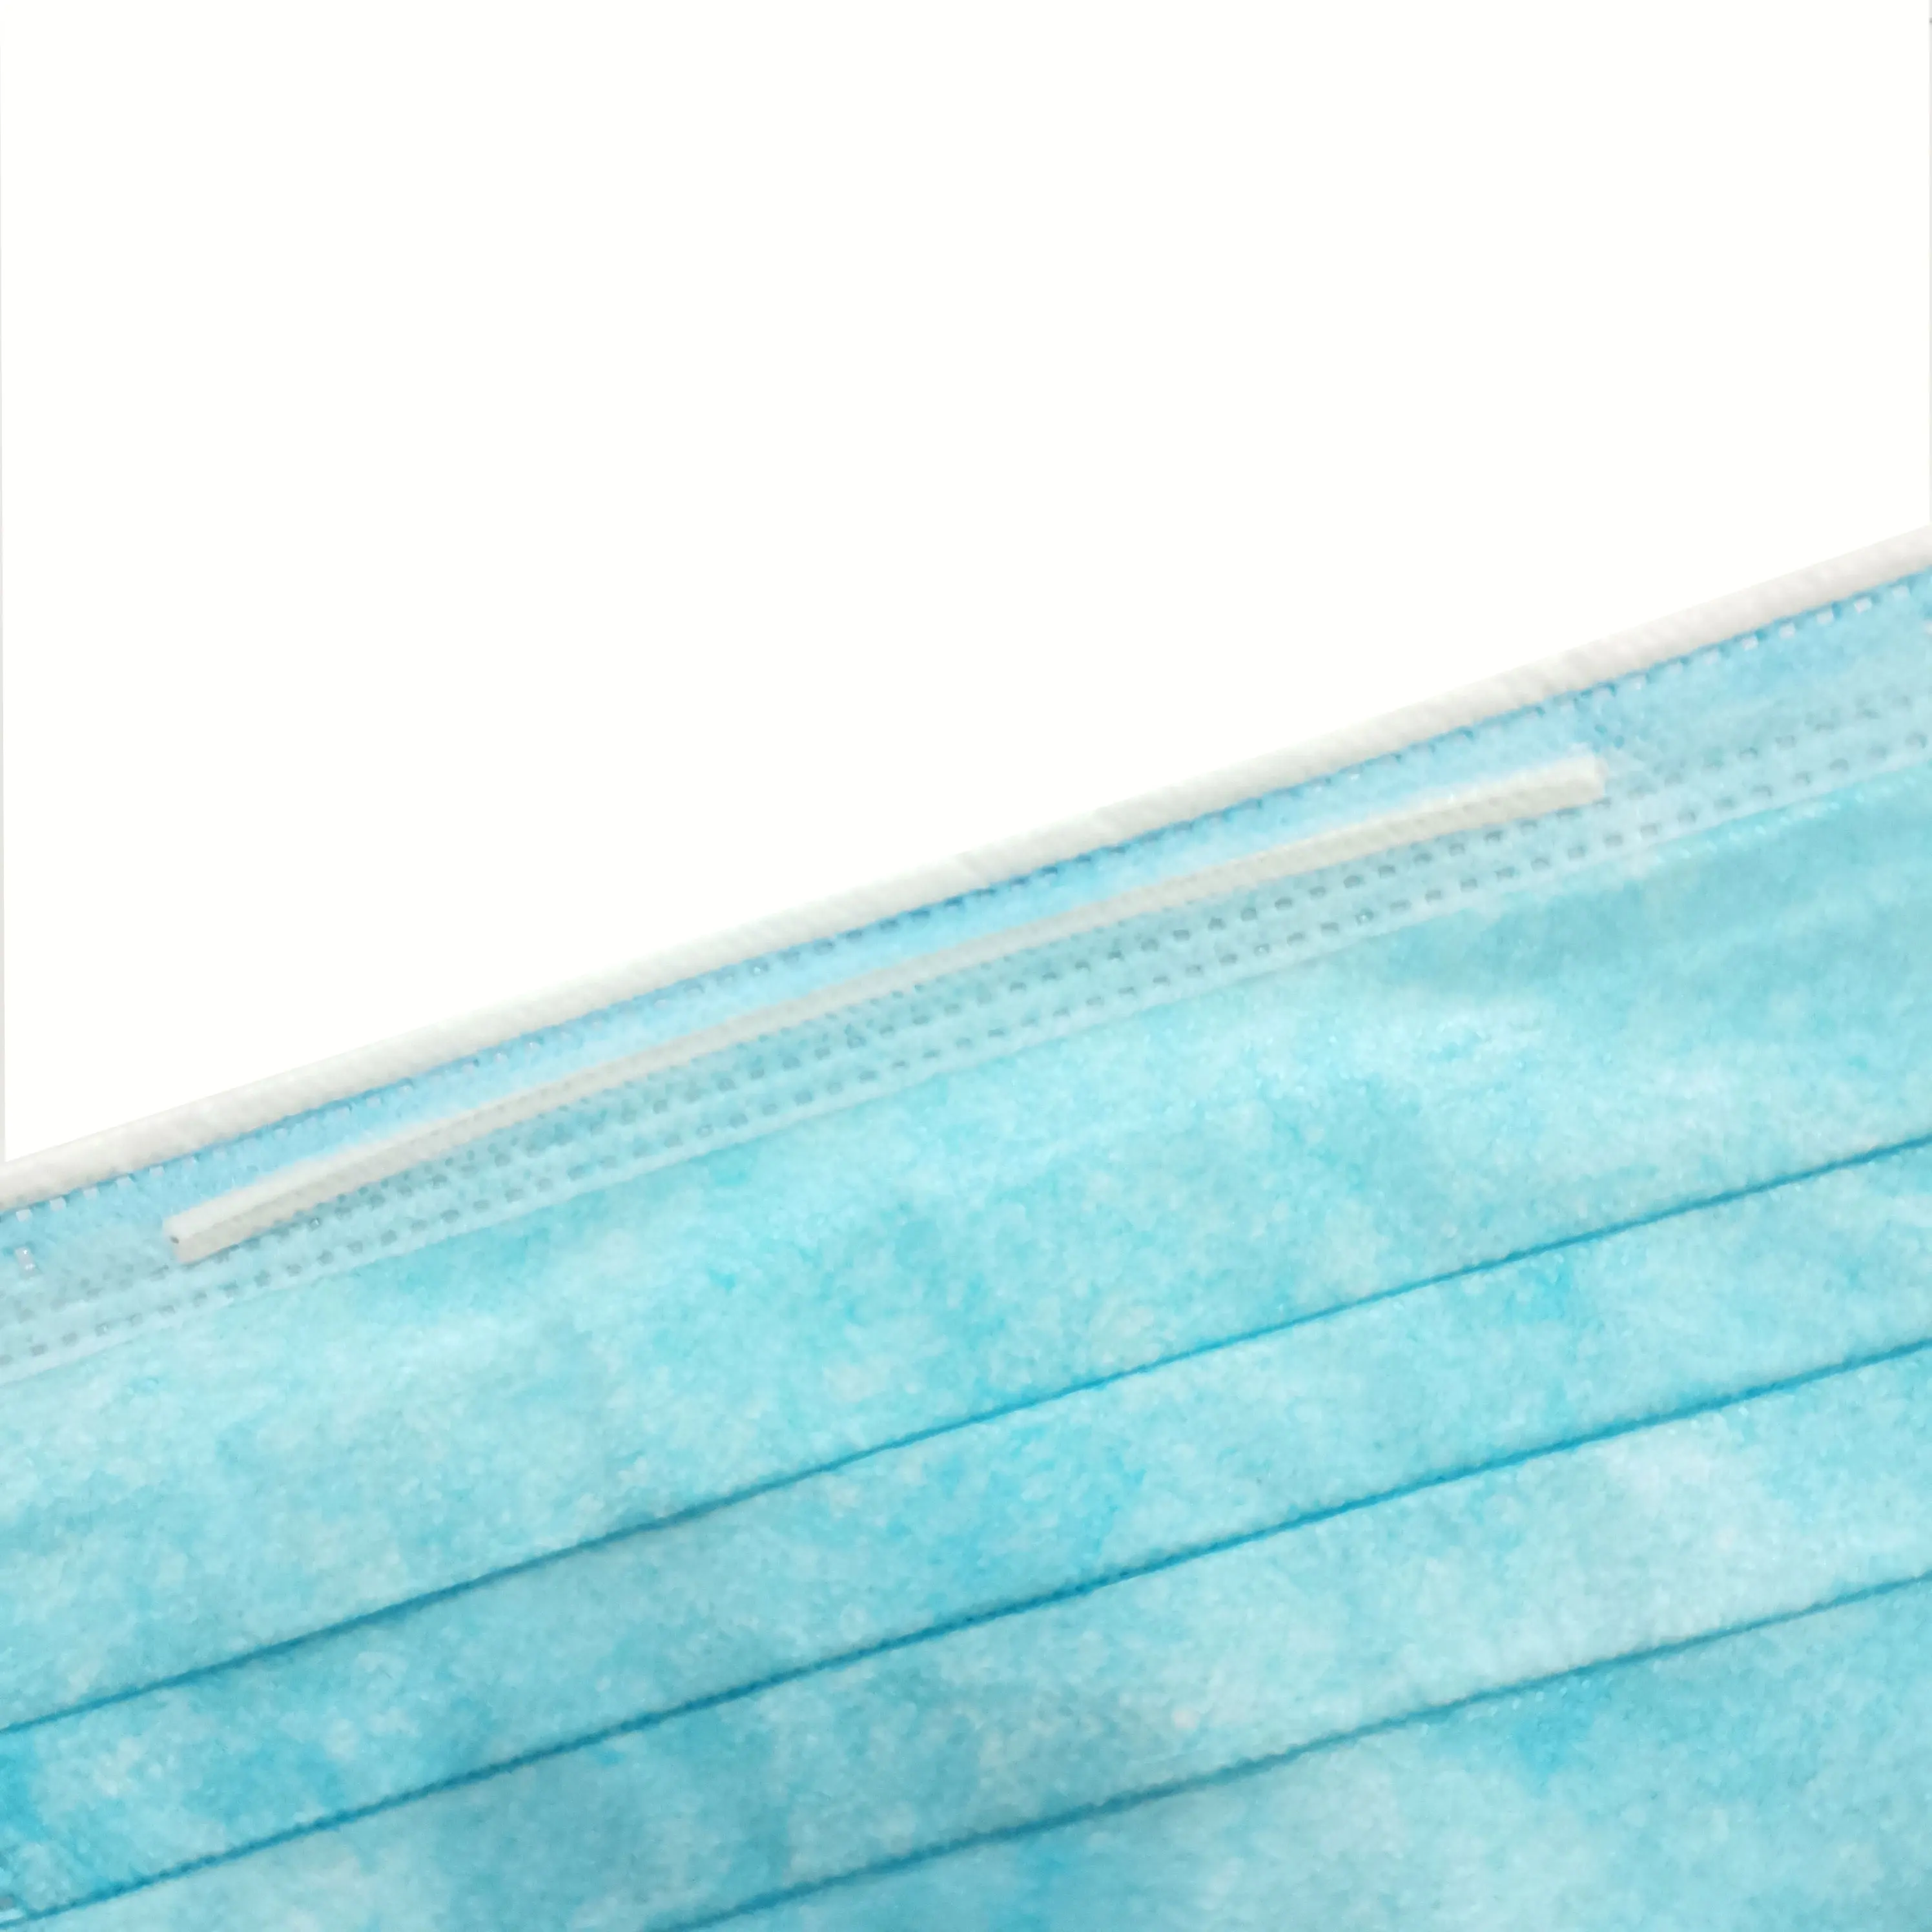 MK Бренд защитные перчатки одноразовые синий нетканый немедицинского 3 слоя маска для лица на ушных петлях